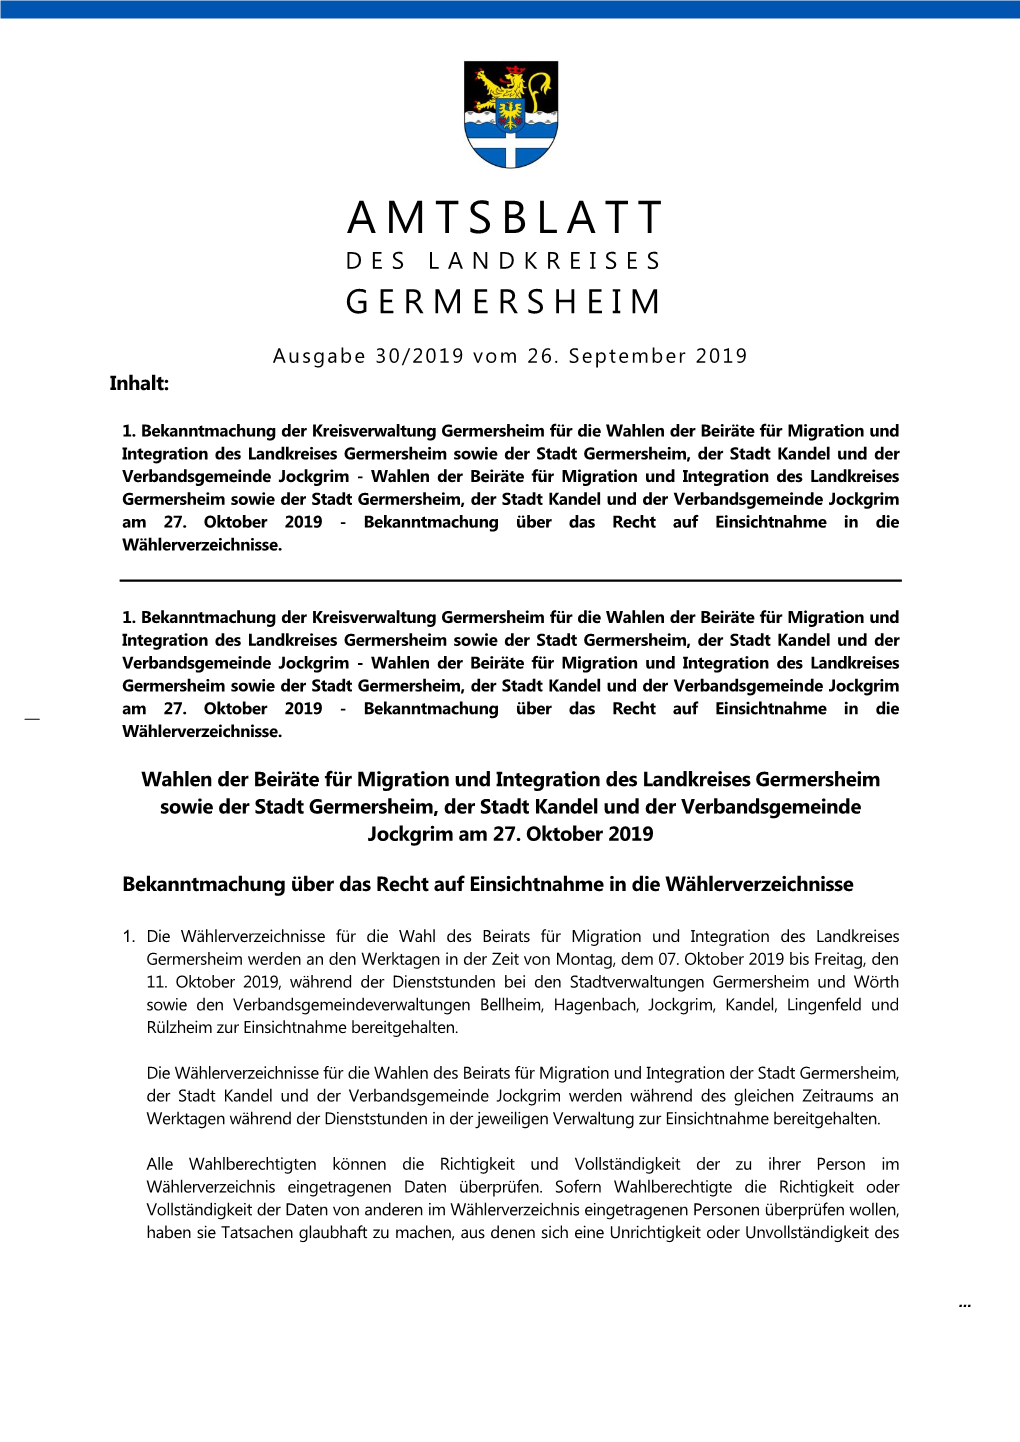 AMTSBLATT DES LANDKREISES GERMERSHEIM Ausgabe 30/2019 Vom 26